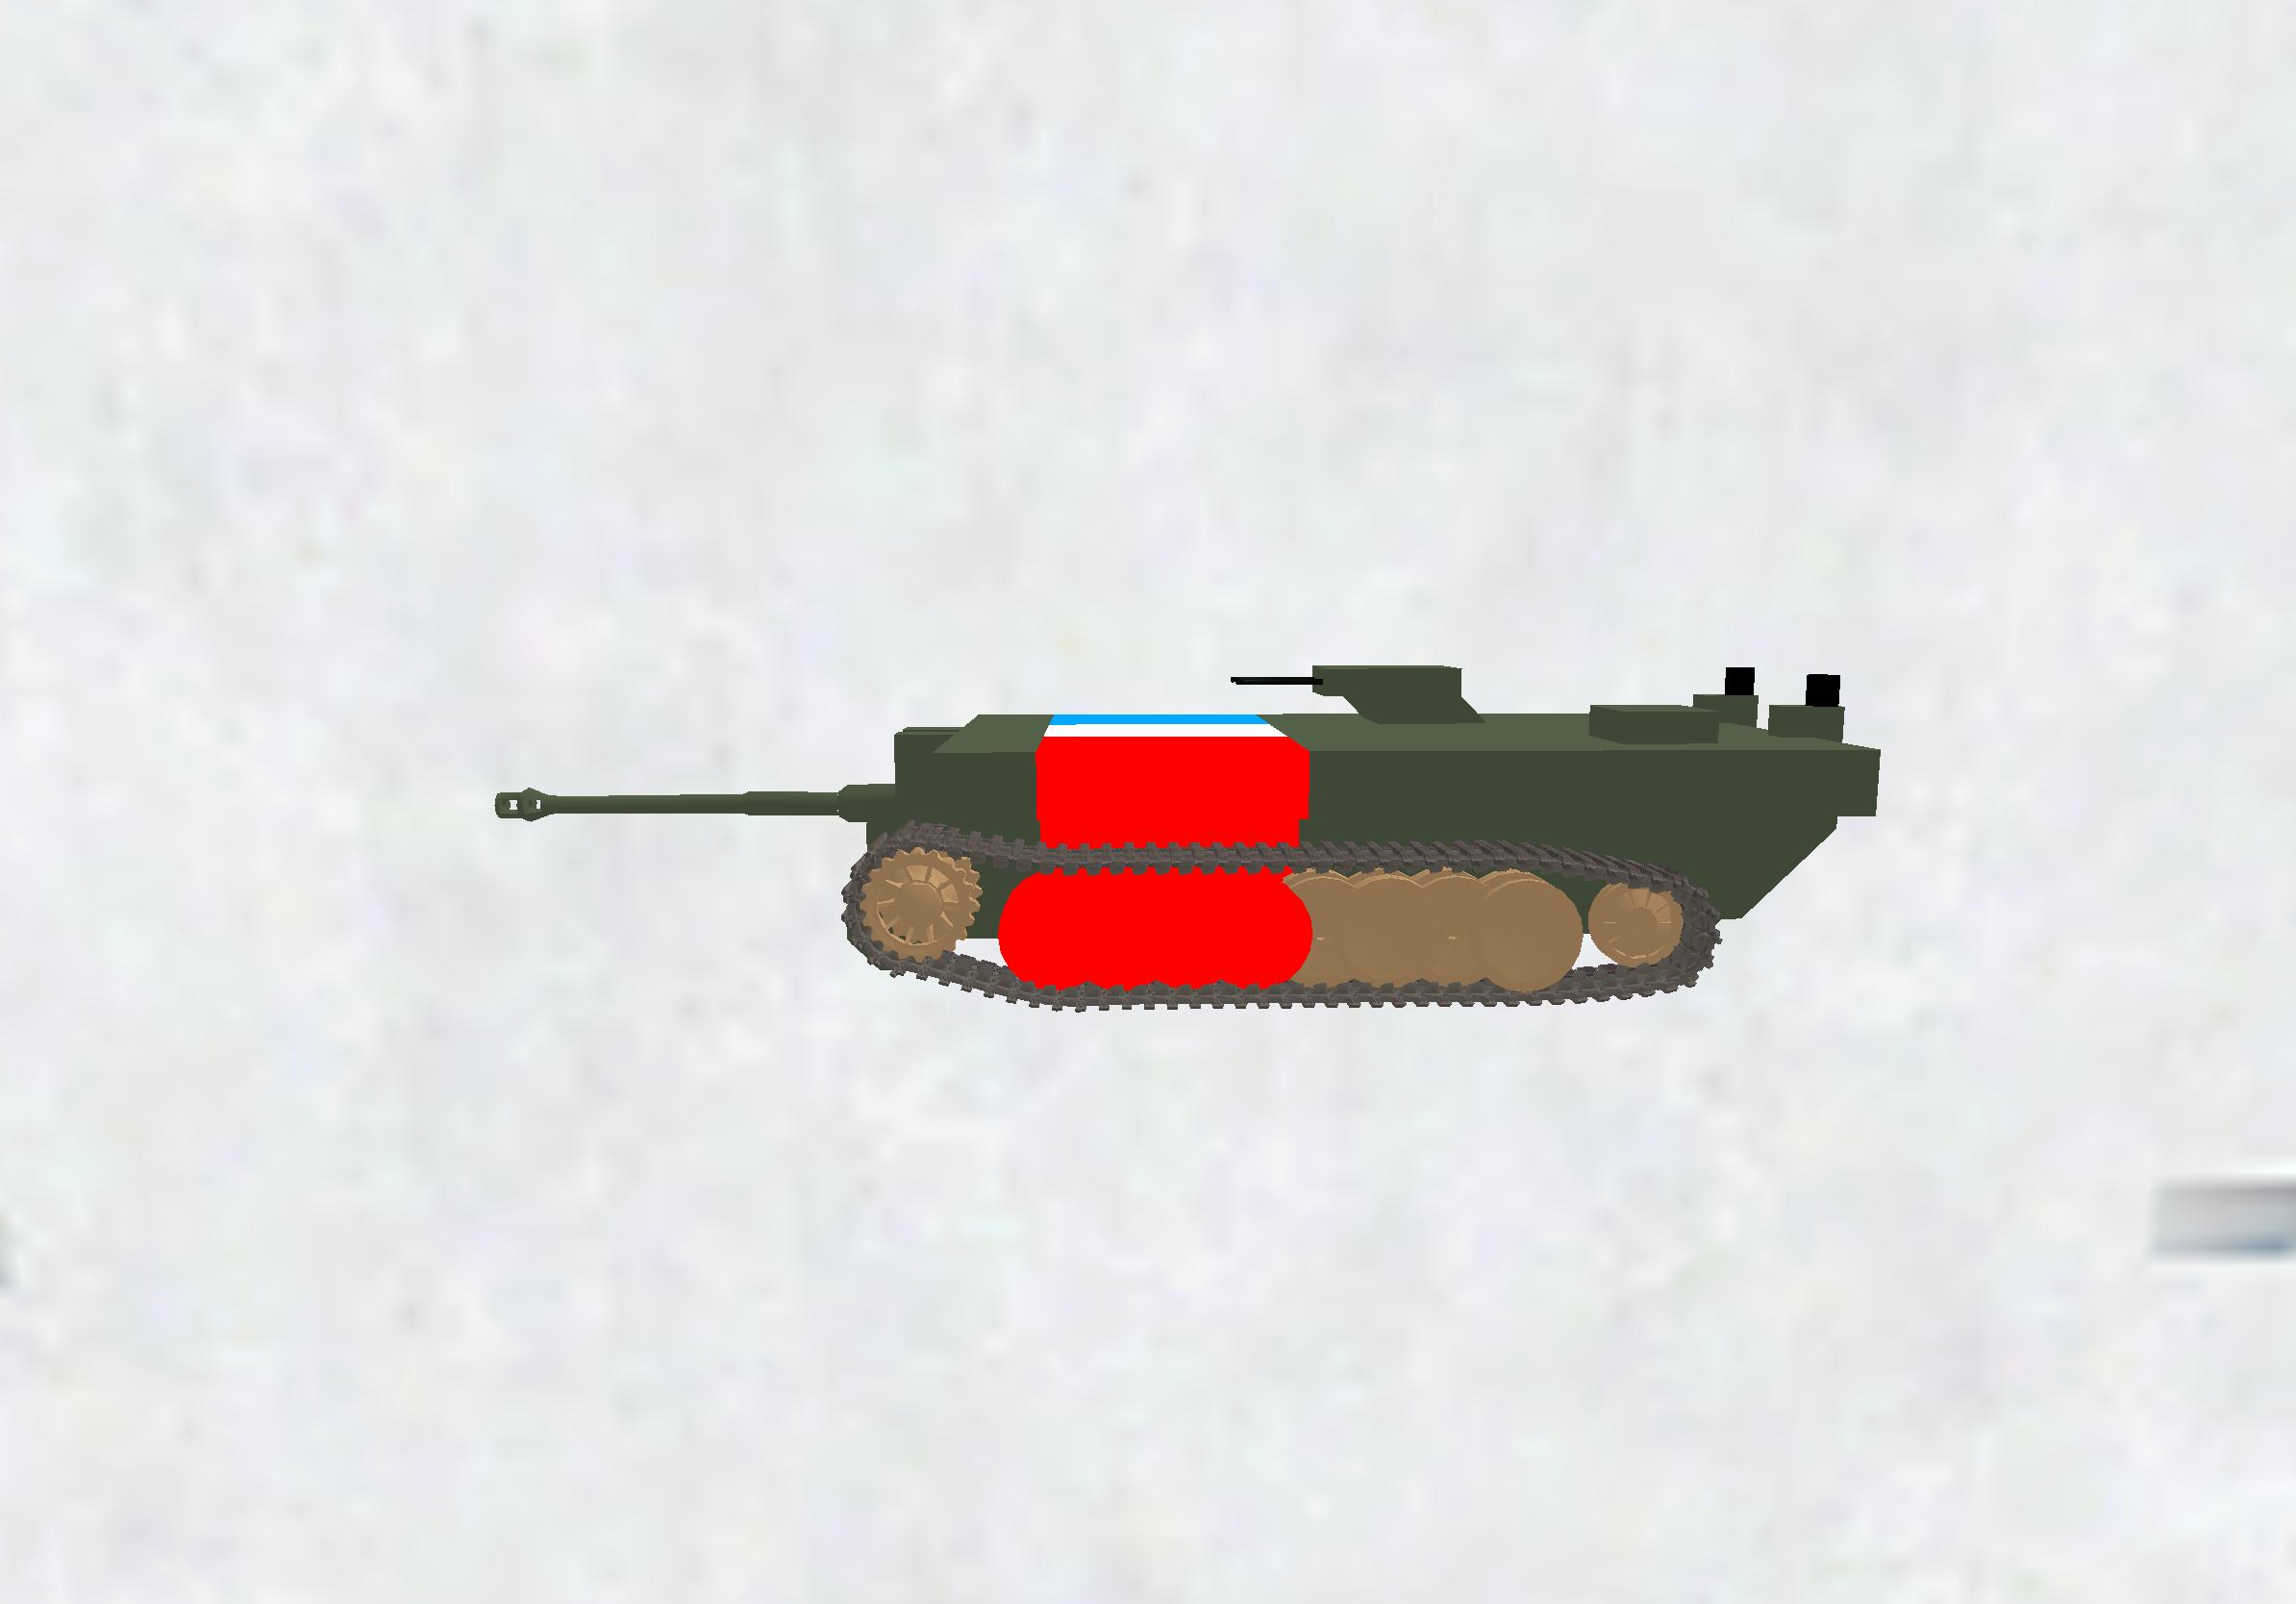 ティーガー砲1門、12.7mm2門の駆逐戦車